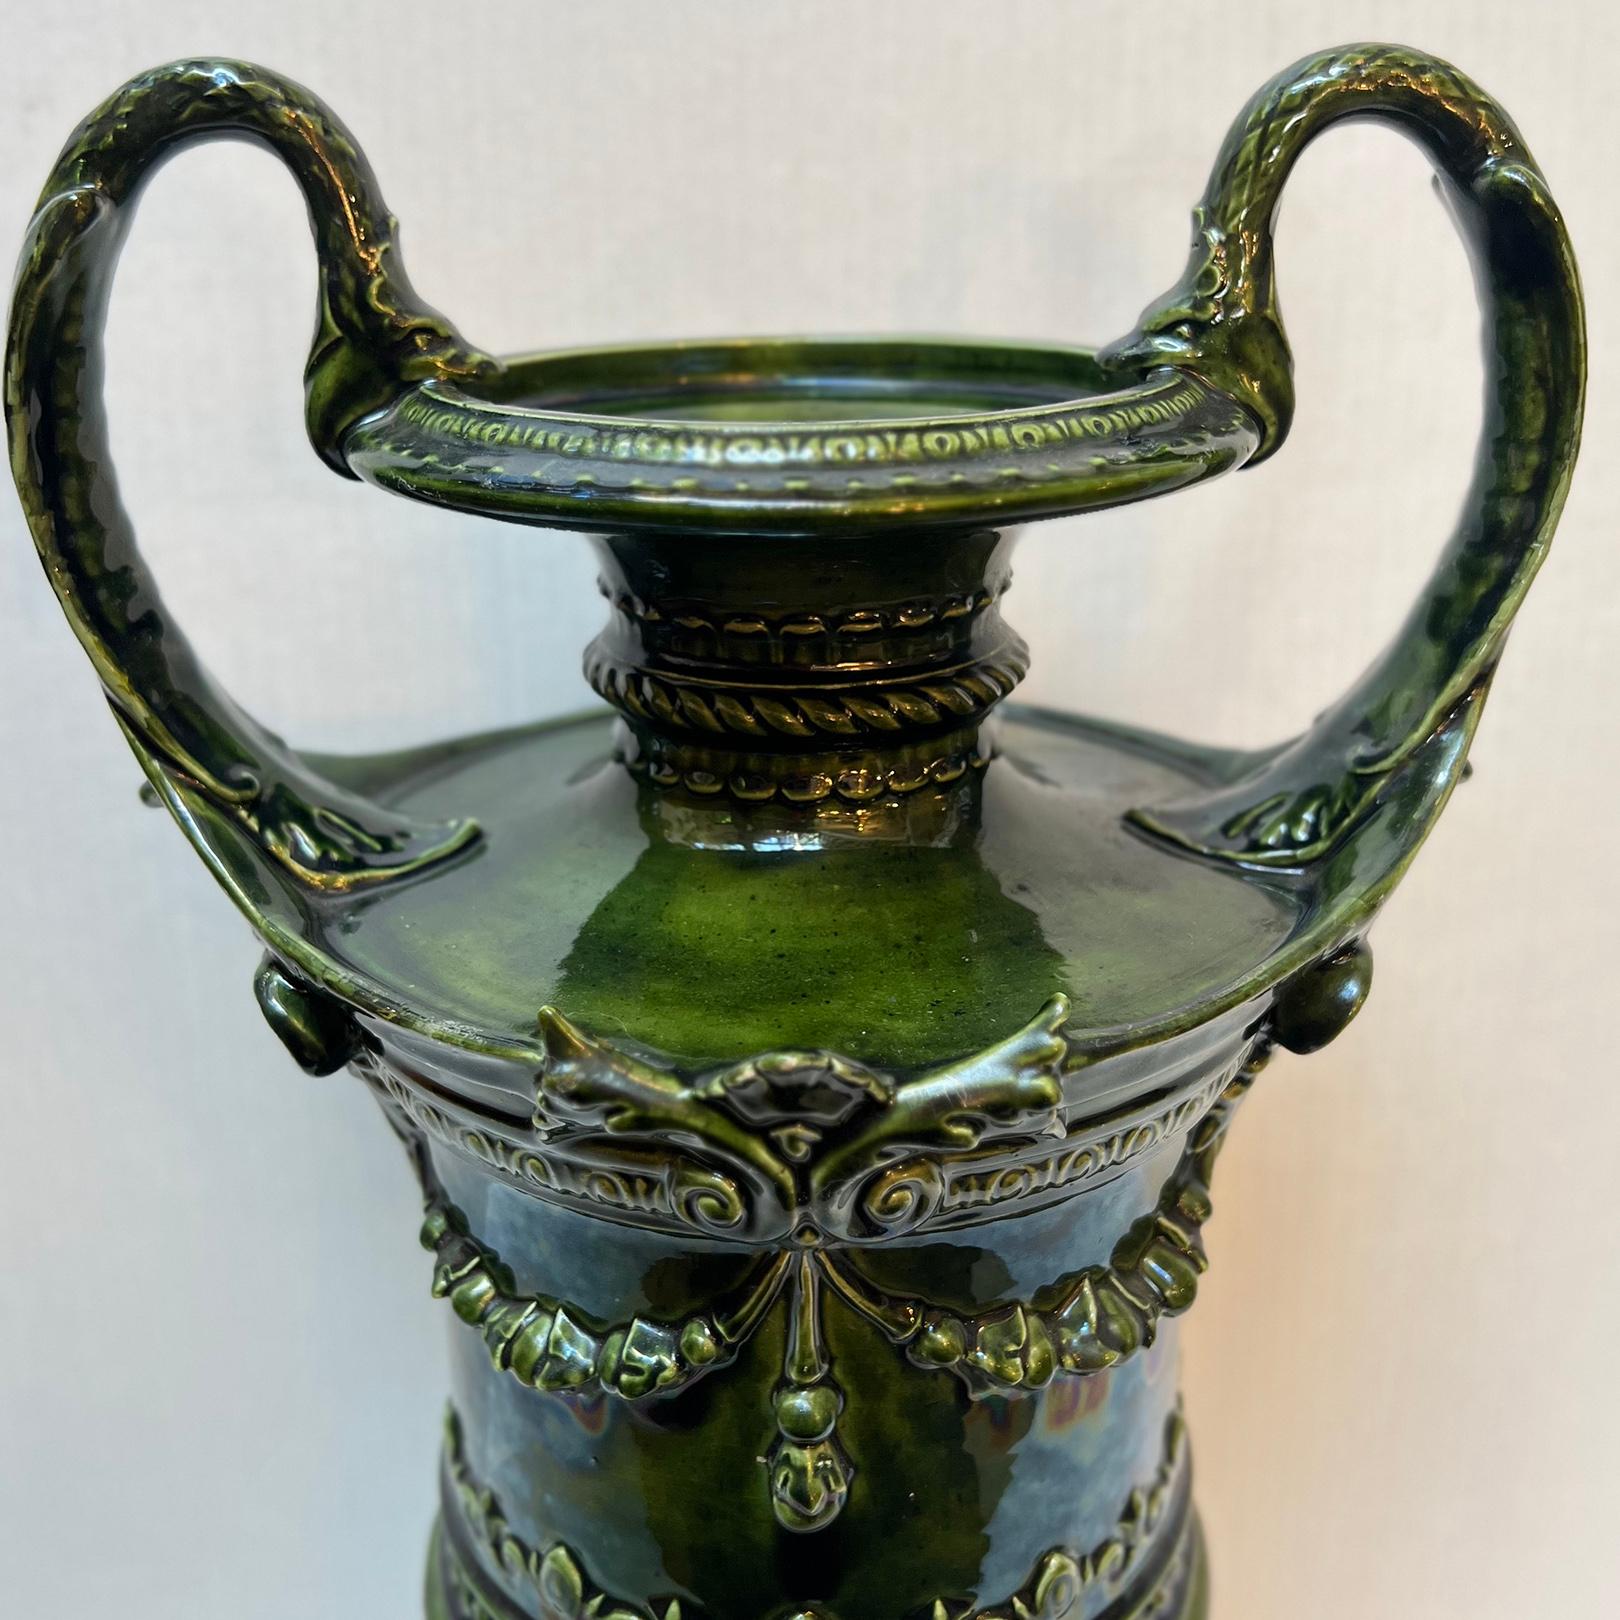 Paire de vases en porcelaine anglaise de la fin du 19e siècle avec docoraion de feuillage sur le corps.

Mesures :
Hauteur : 18.5